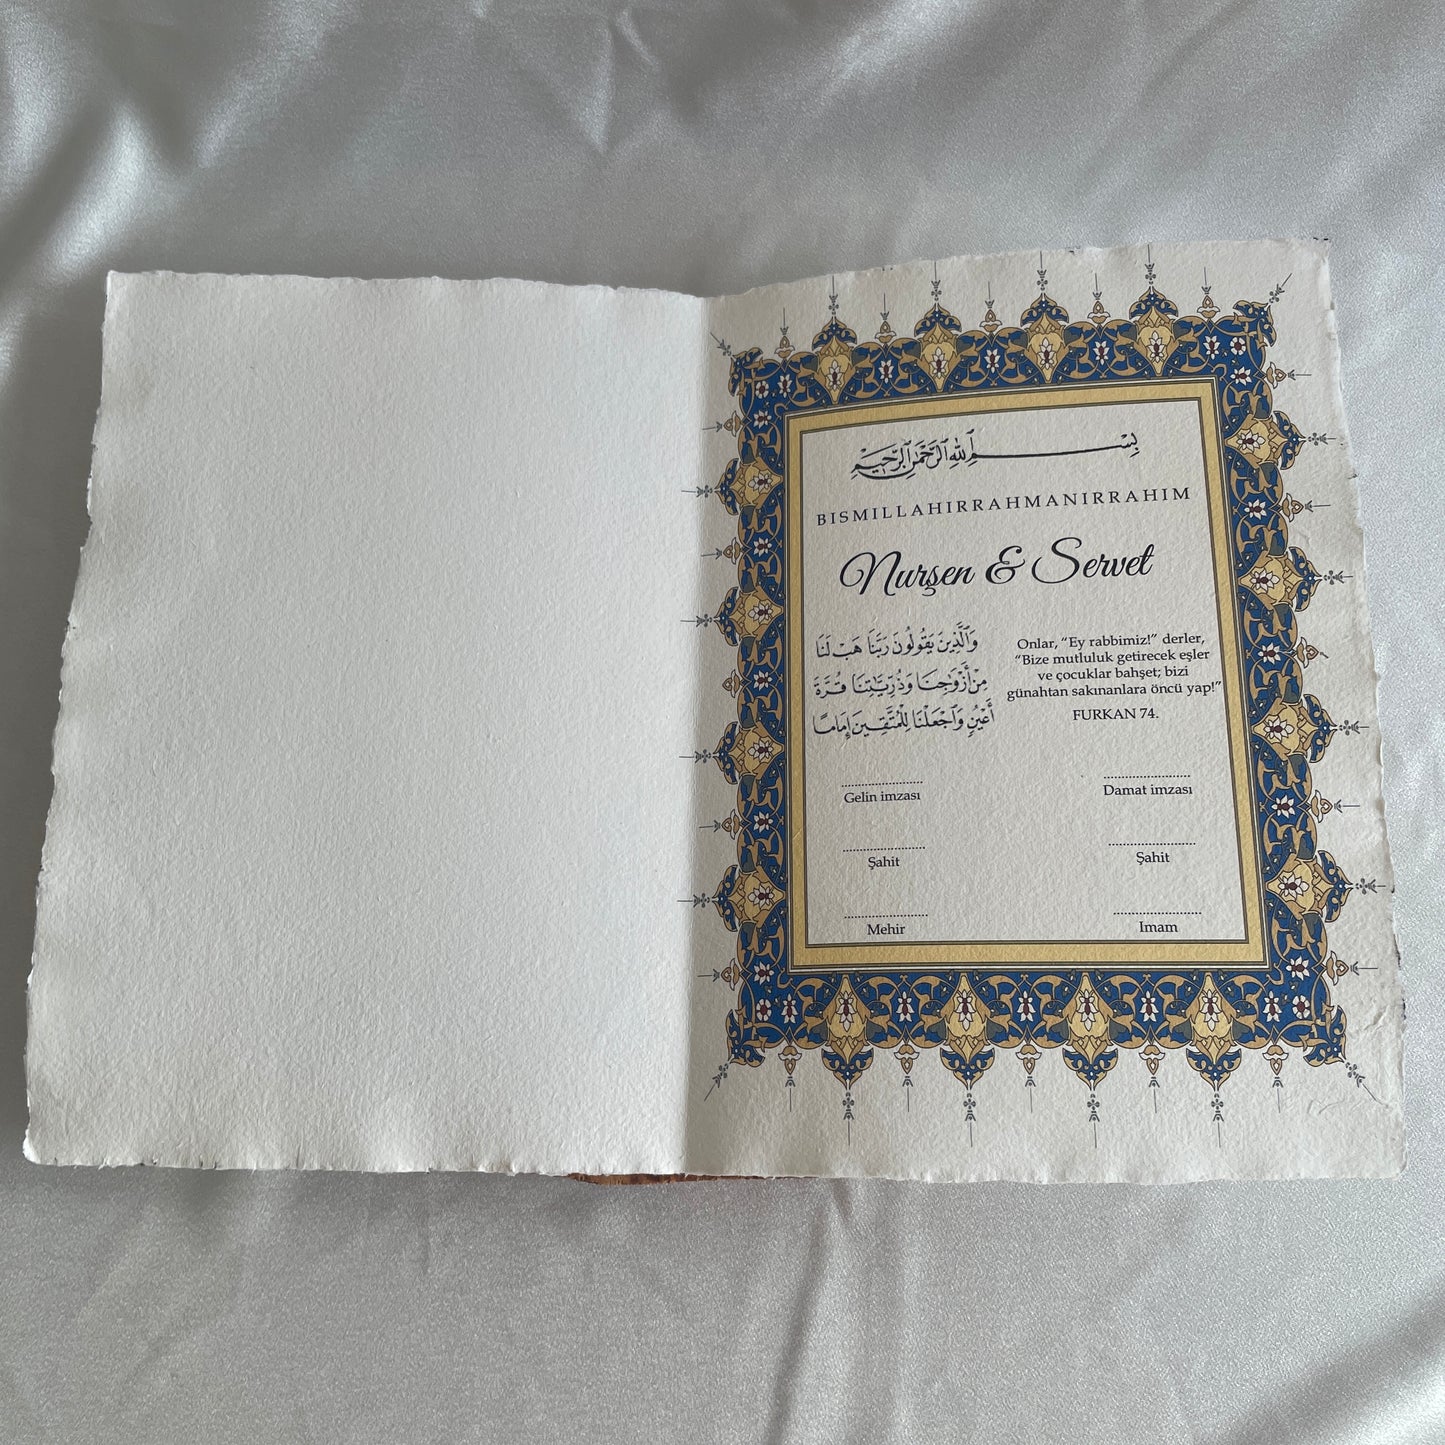 nikah akte - verloving akte - nikah belgesi - trouw certificate - huwelijk certificaat - dini nikah belgesi - islamitische akte - islam certificaat - trouw bewijs - trouwakte - huwelijksakte